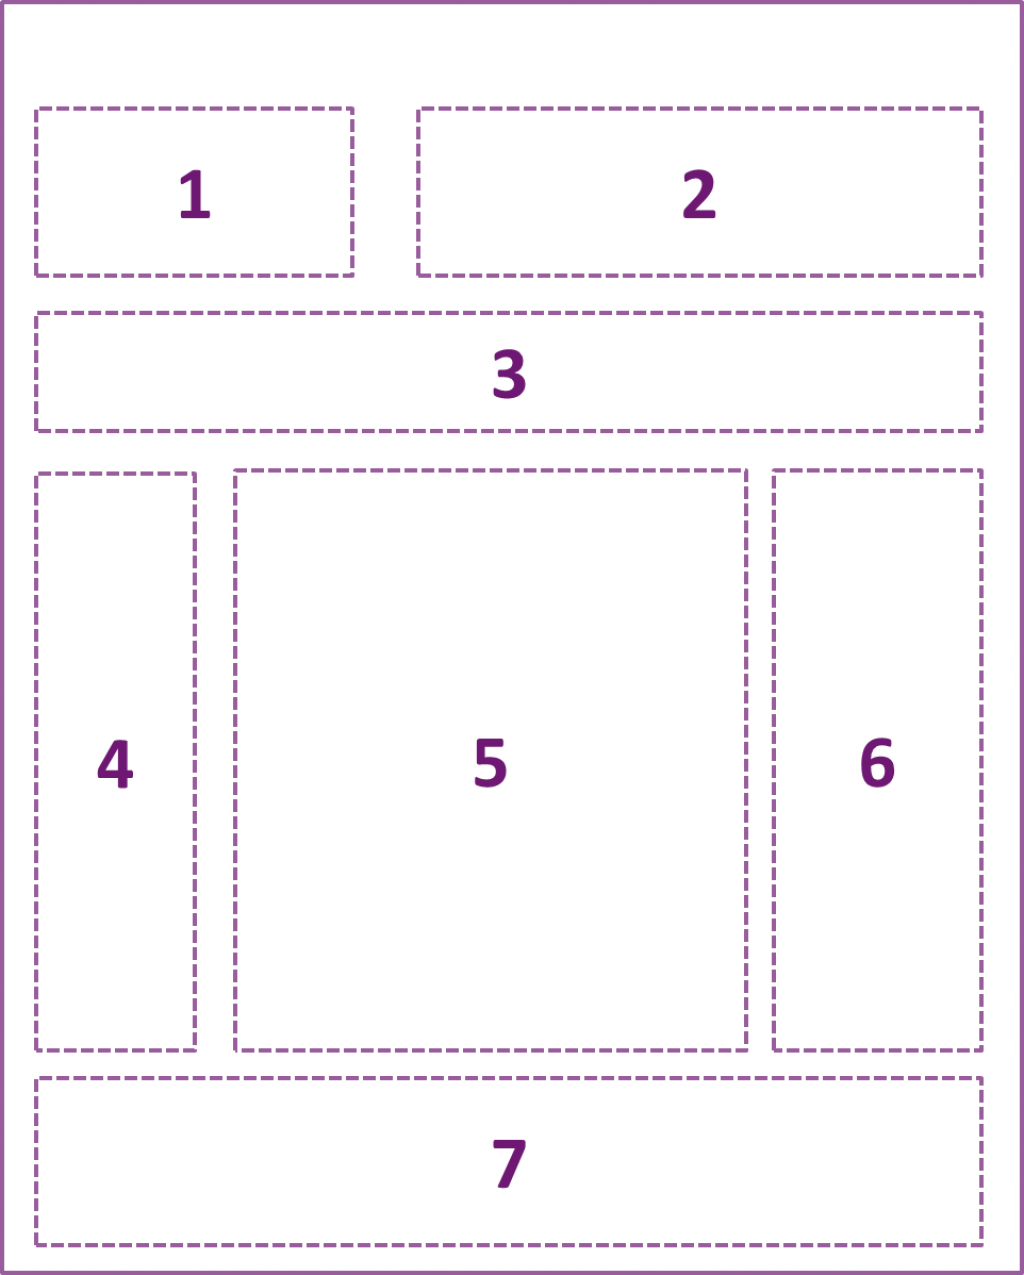 grid nettsted med nummererte områder. Område 1: rad 1 til venstre; område 2: rad 1 til høyre; område 3: rad 2, hele linje; område 4: rad 3 til venstre; område 5: rad 3 i midten (ofte hovedinnhold); område 6: rad 3 til høyre; område 7: rad 4, hele linje